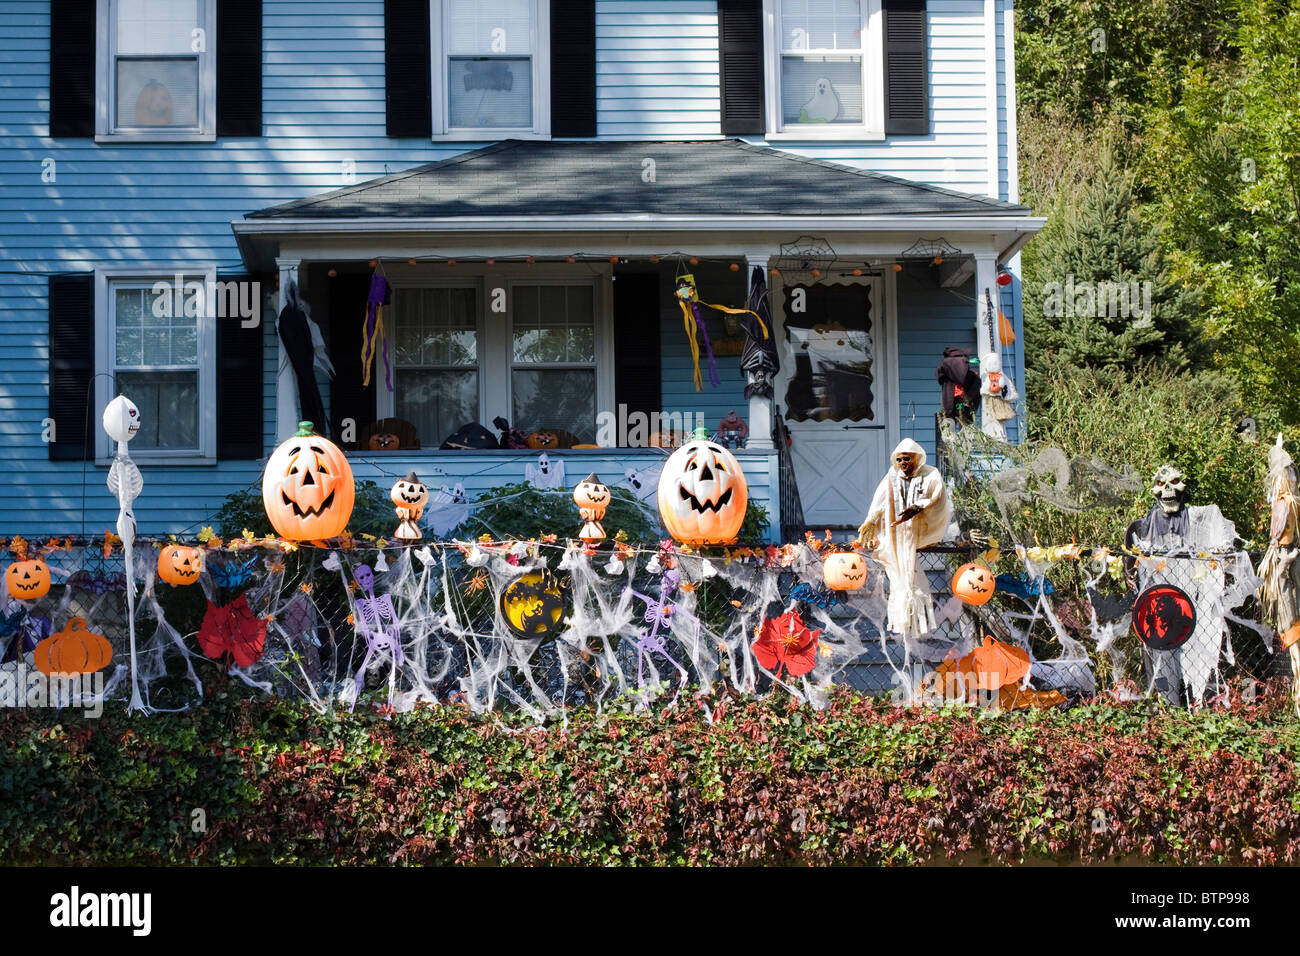 Ein Haus In Amerika für Halloween dekoriert Stockfotografie - Alamy